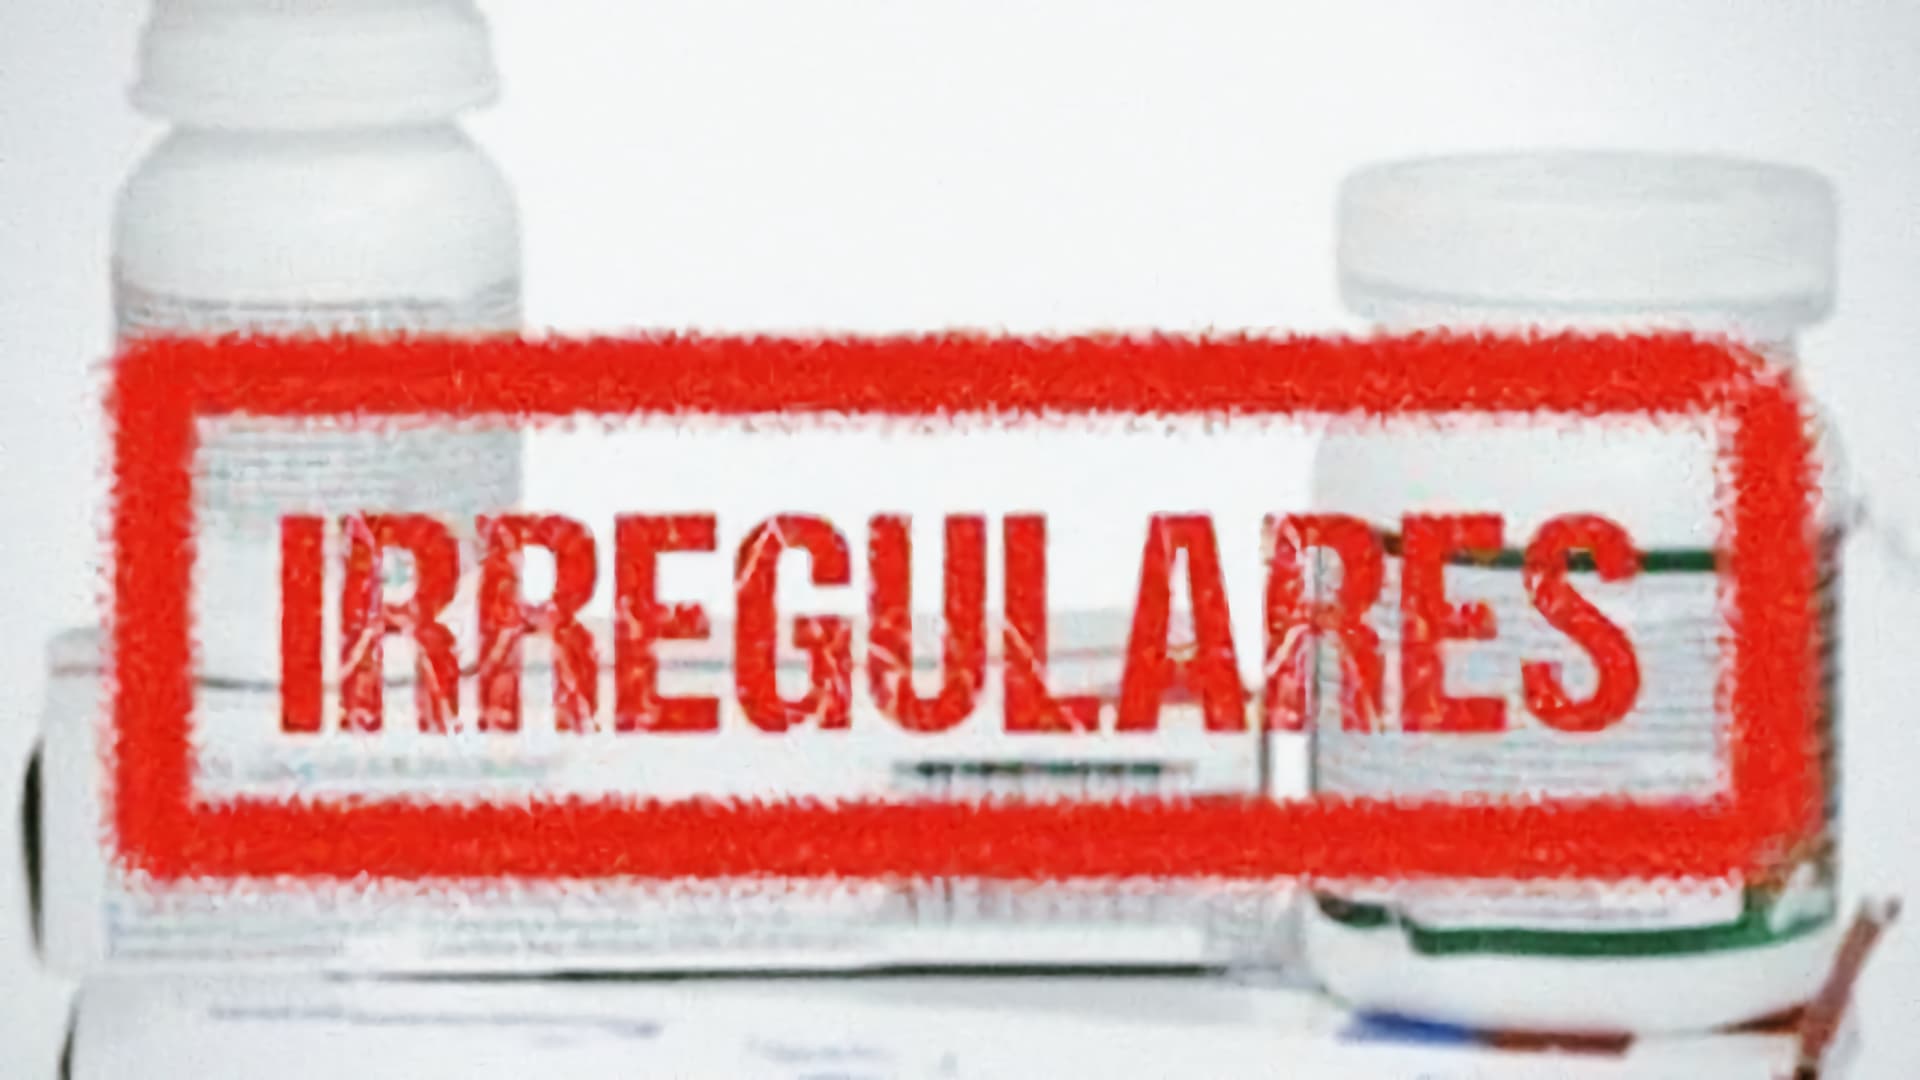 COFEPRIS warns about 44 irregular drug distributors; check the list